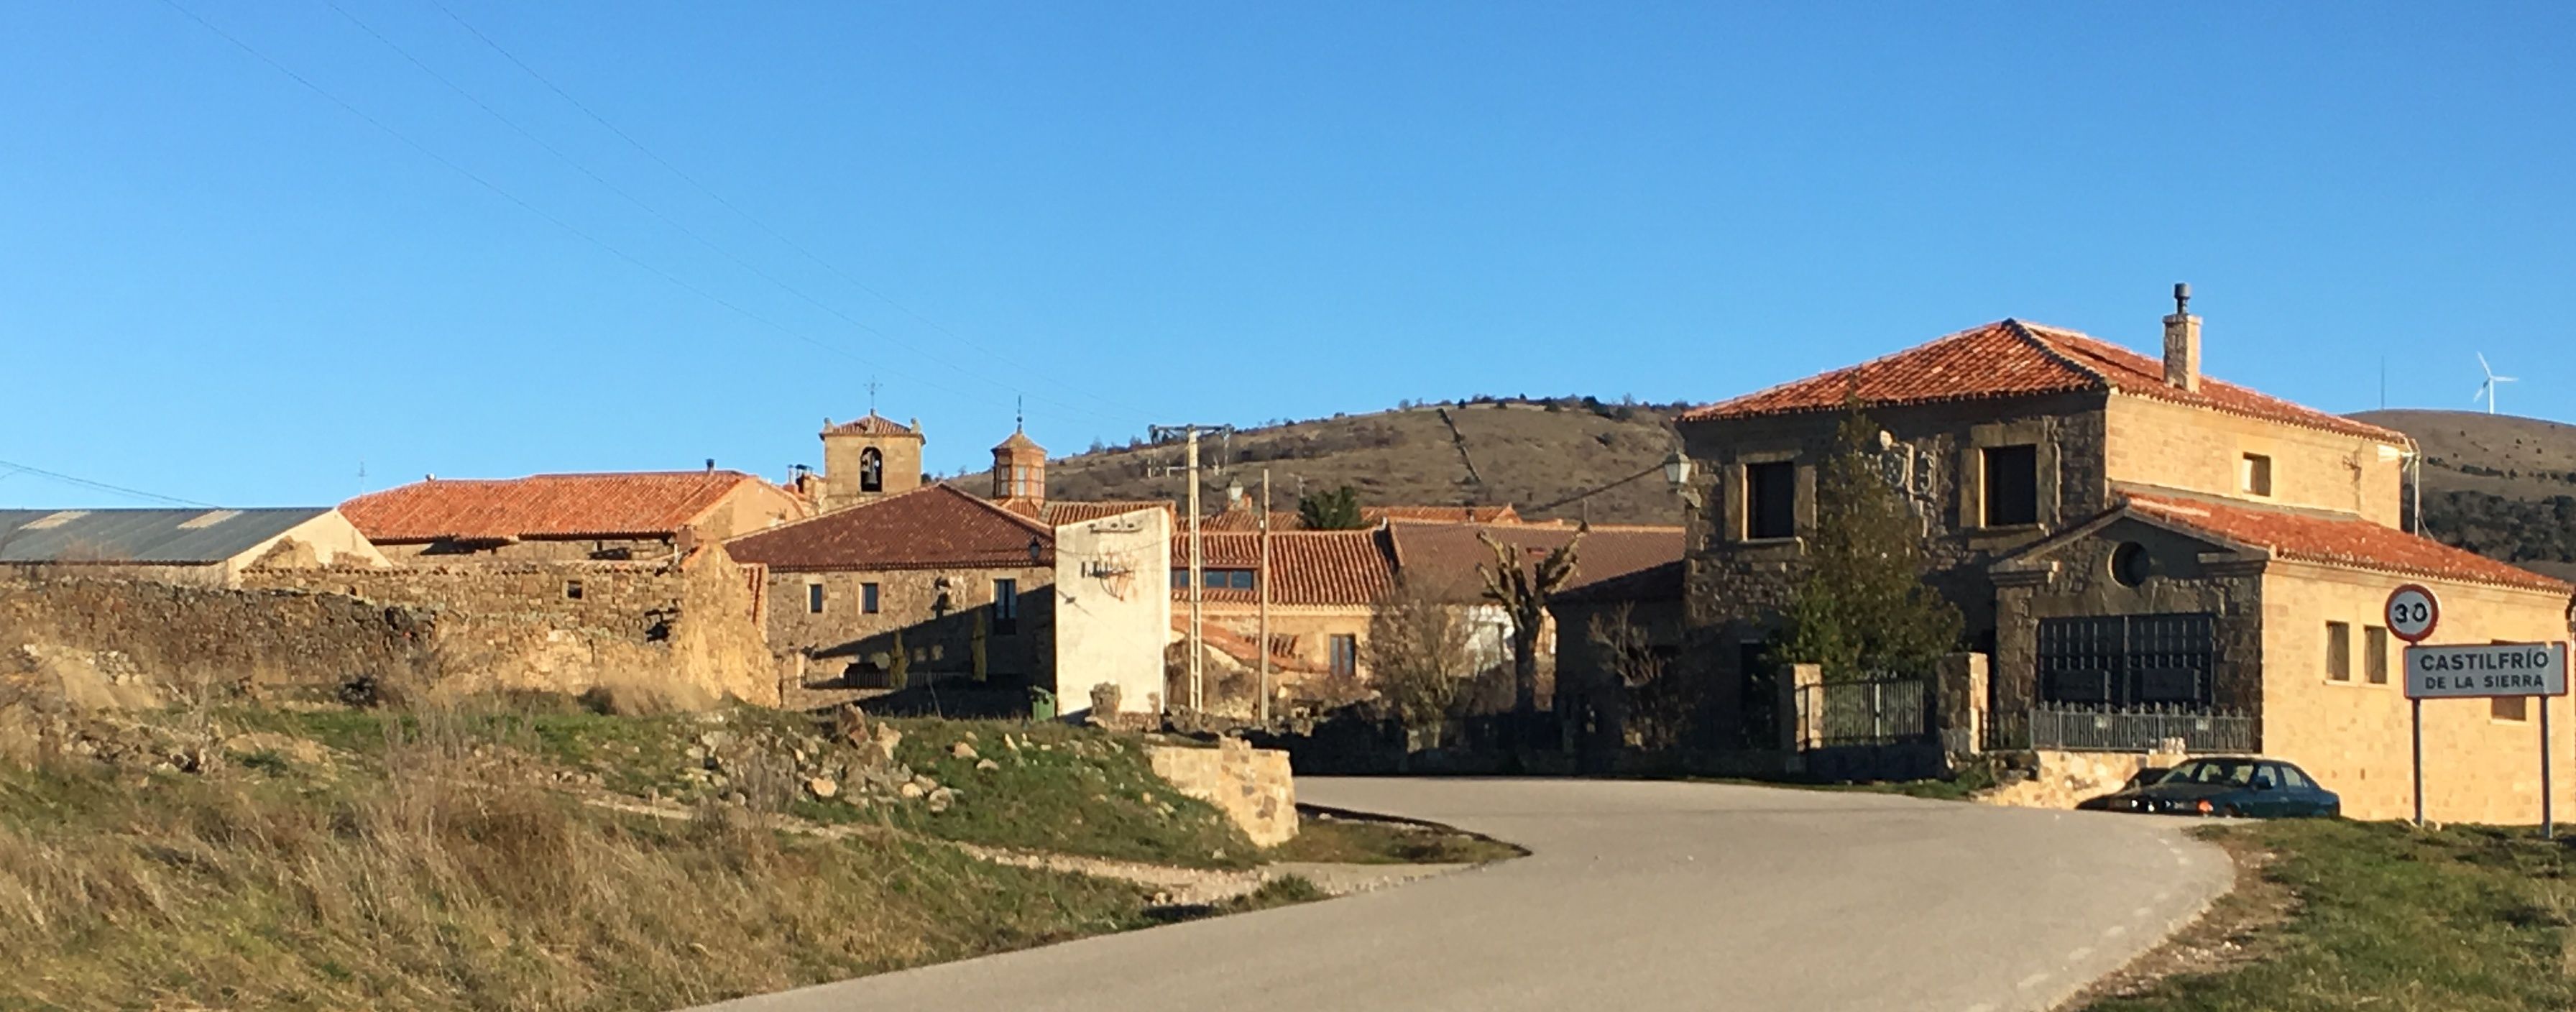 Los vecinos de Castilfrío (Soria) gestionan la primera comunidad energética rural en España